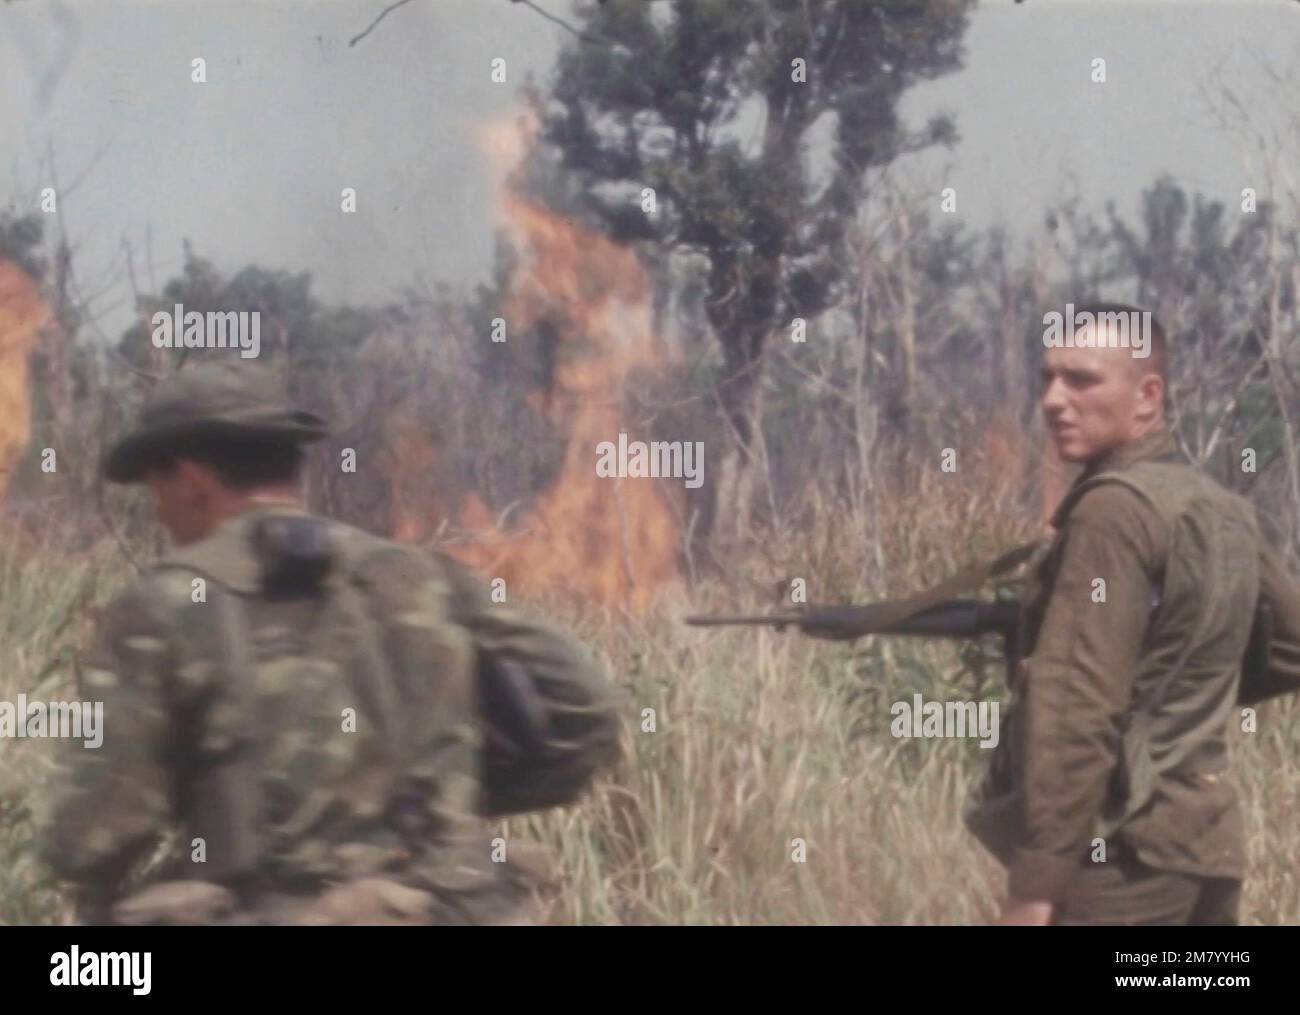 Les troupes américaines se déplacent dans la forêt, long Binh, Vietnam du Sud, 24 février 1969 dans ce screengrab pris d'une vidéo. REUTERS TV VIA REUTERS Banque D'Images